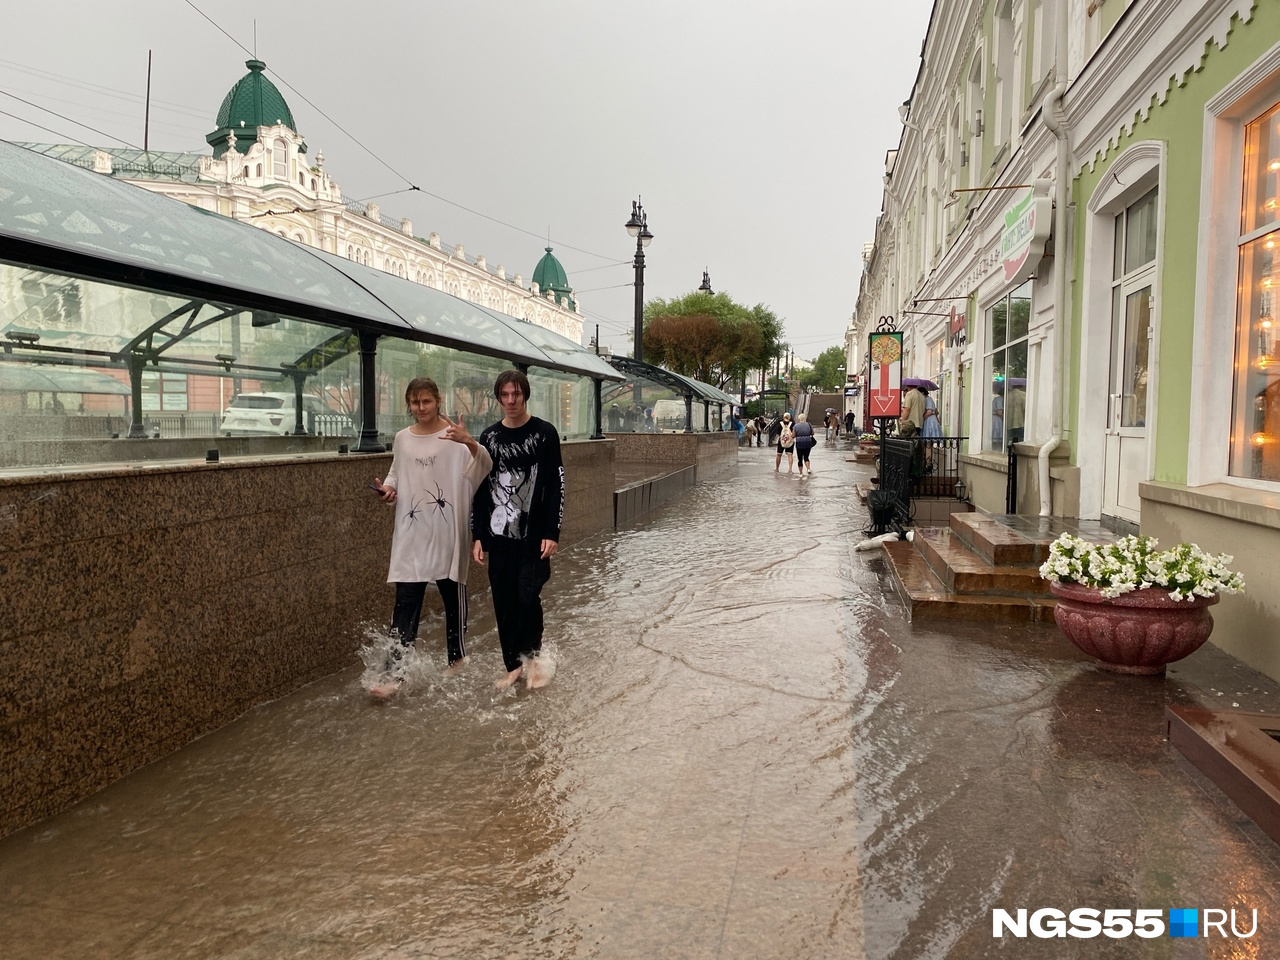 Бассейн в автобусах и рухнувшее в яму авто: показываем последствия ливня в Омске